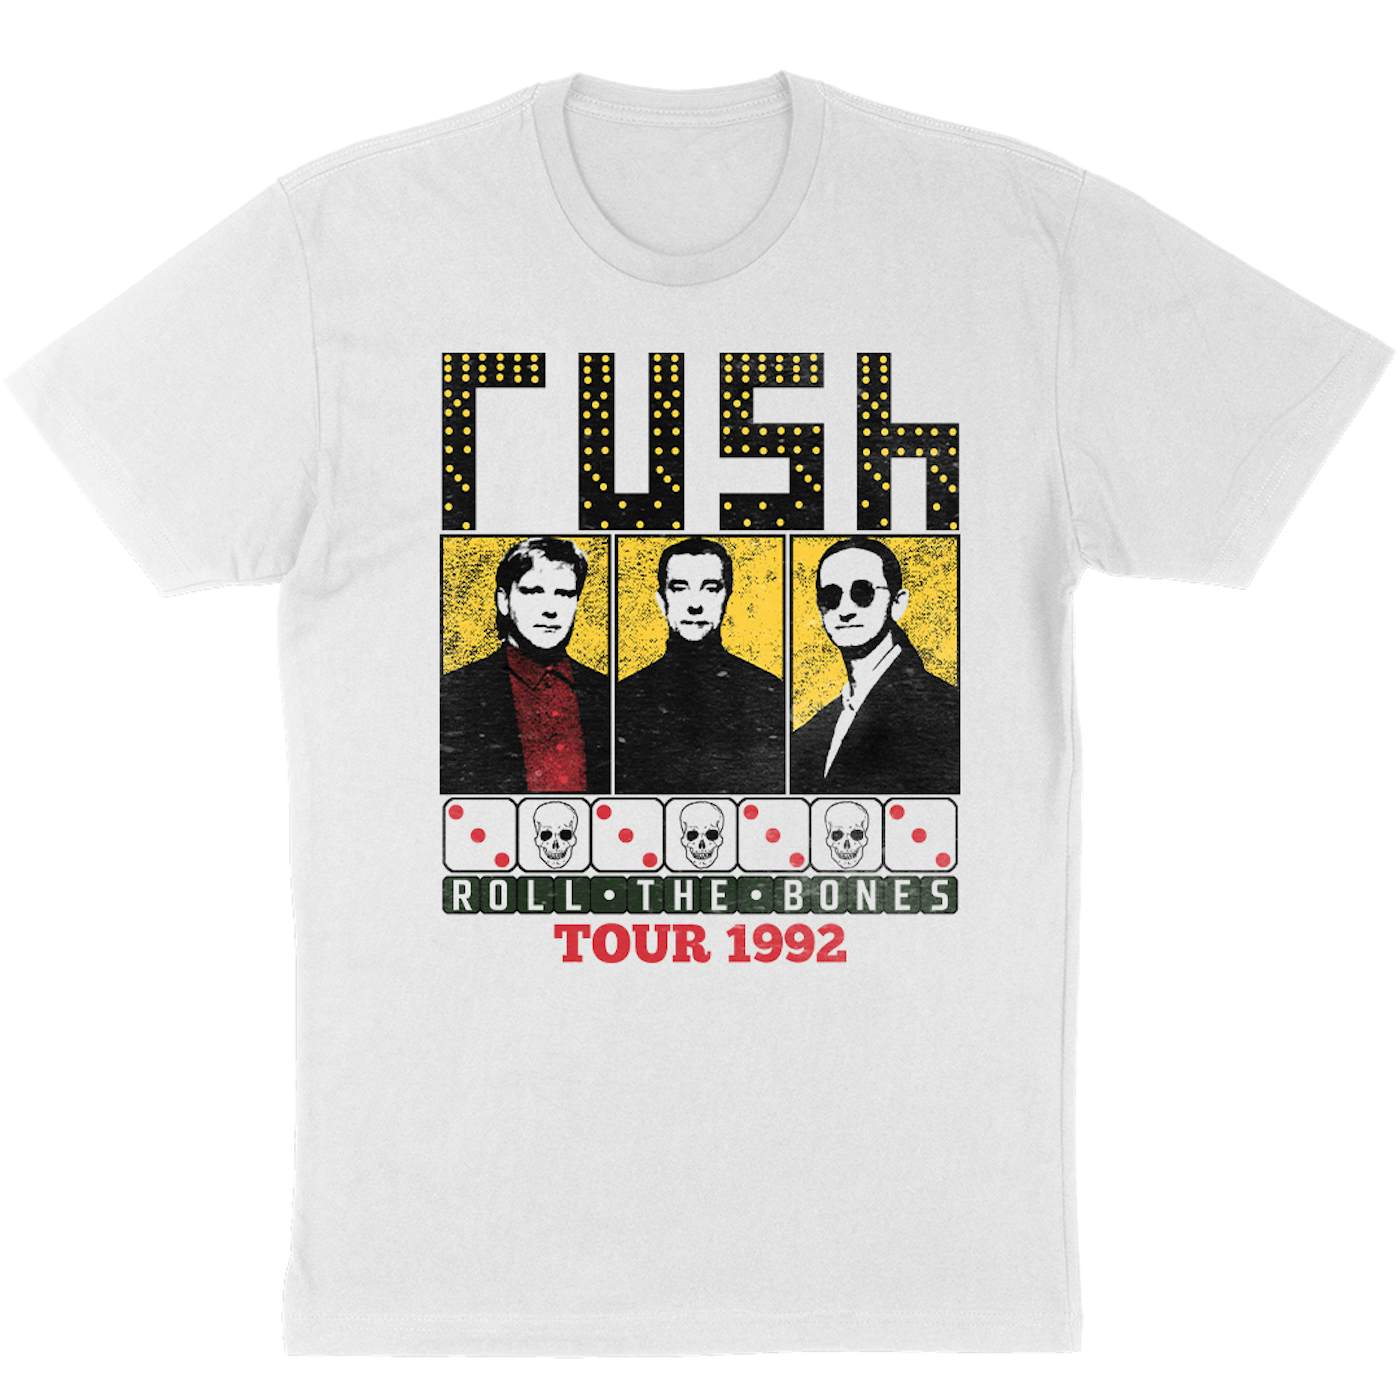 Rush "Roll the Bones" T-Shirt in White